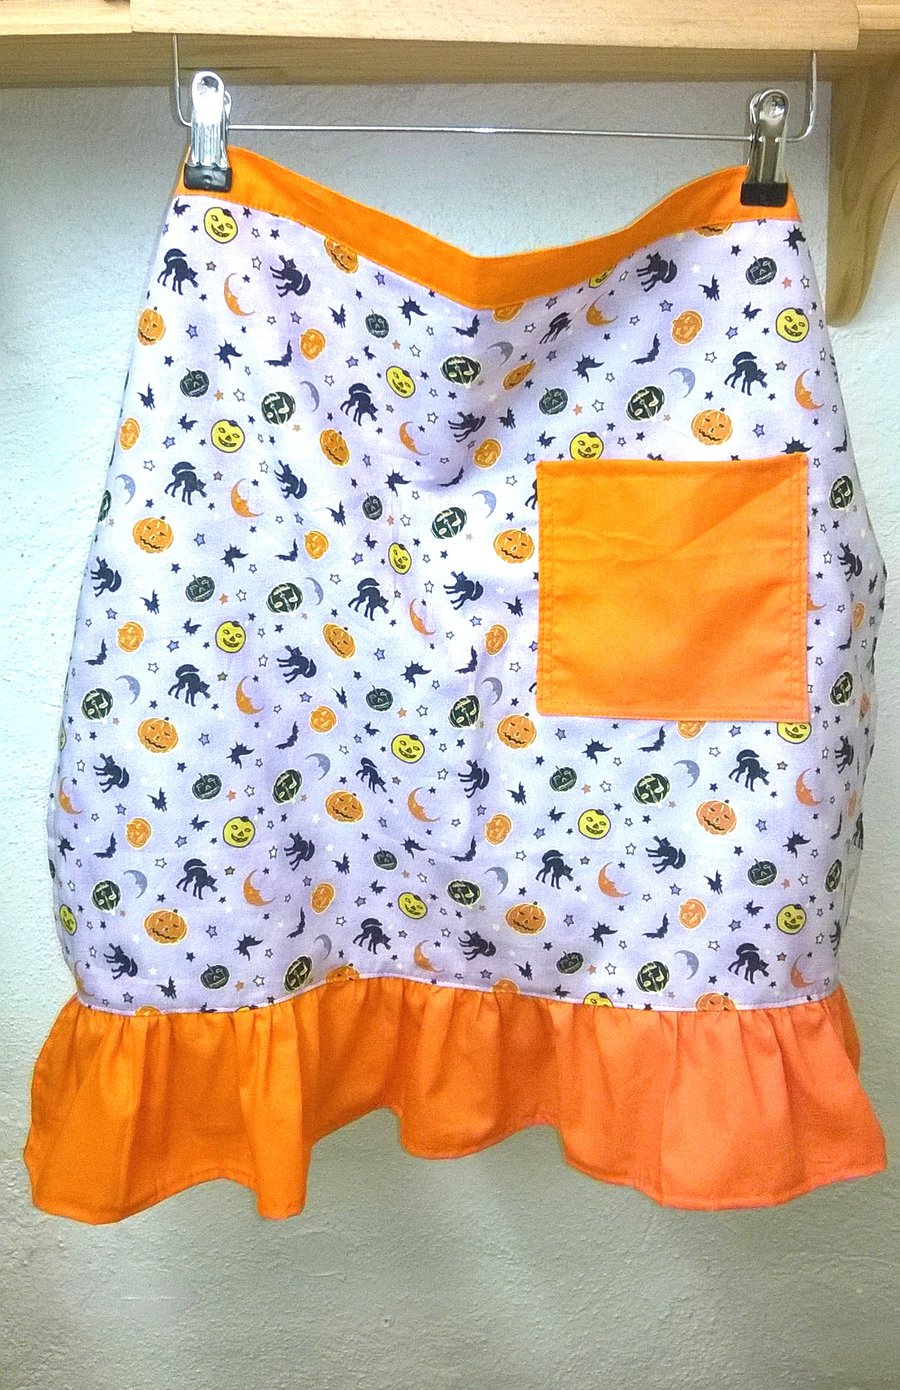 Halloween apron with pumpkins, bats,cats, half apron, orange frill & pocket